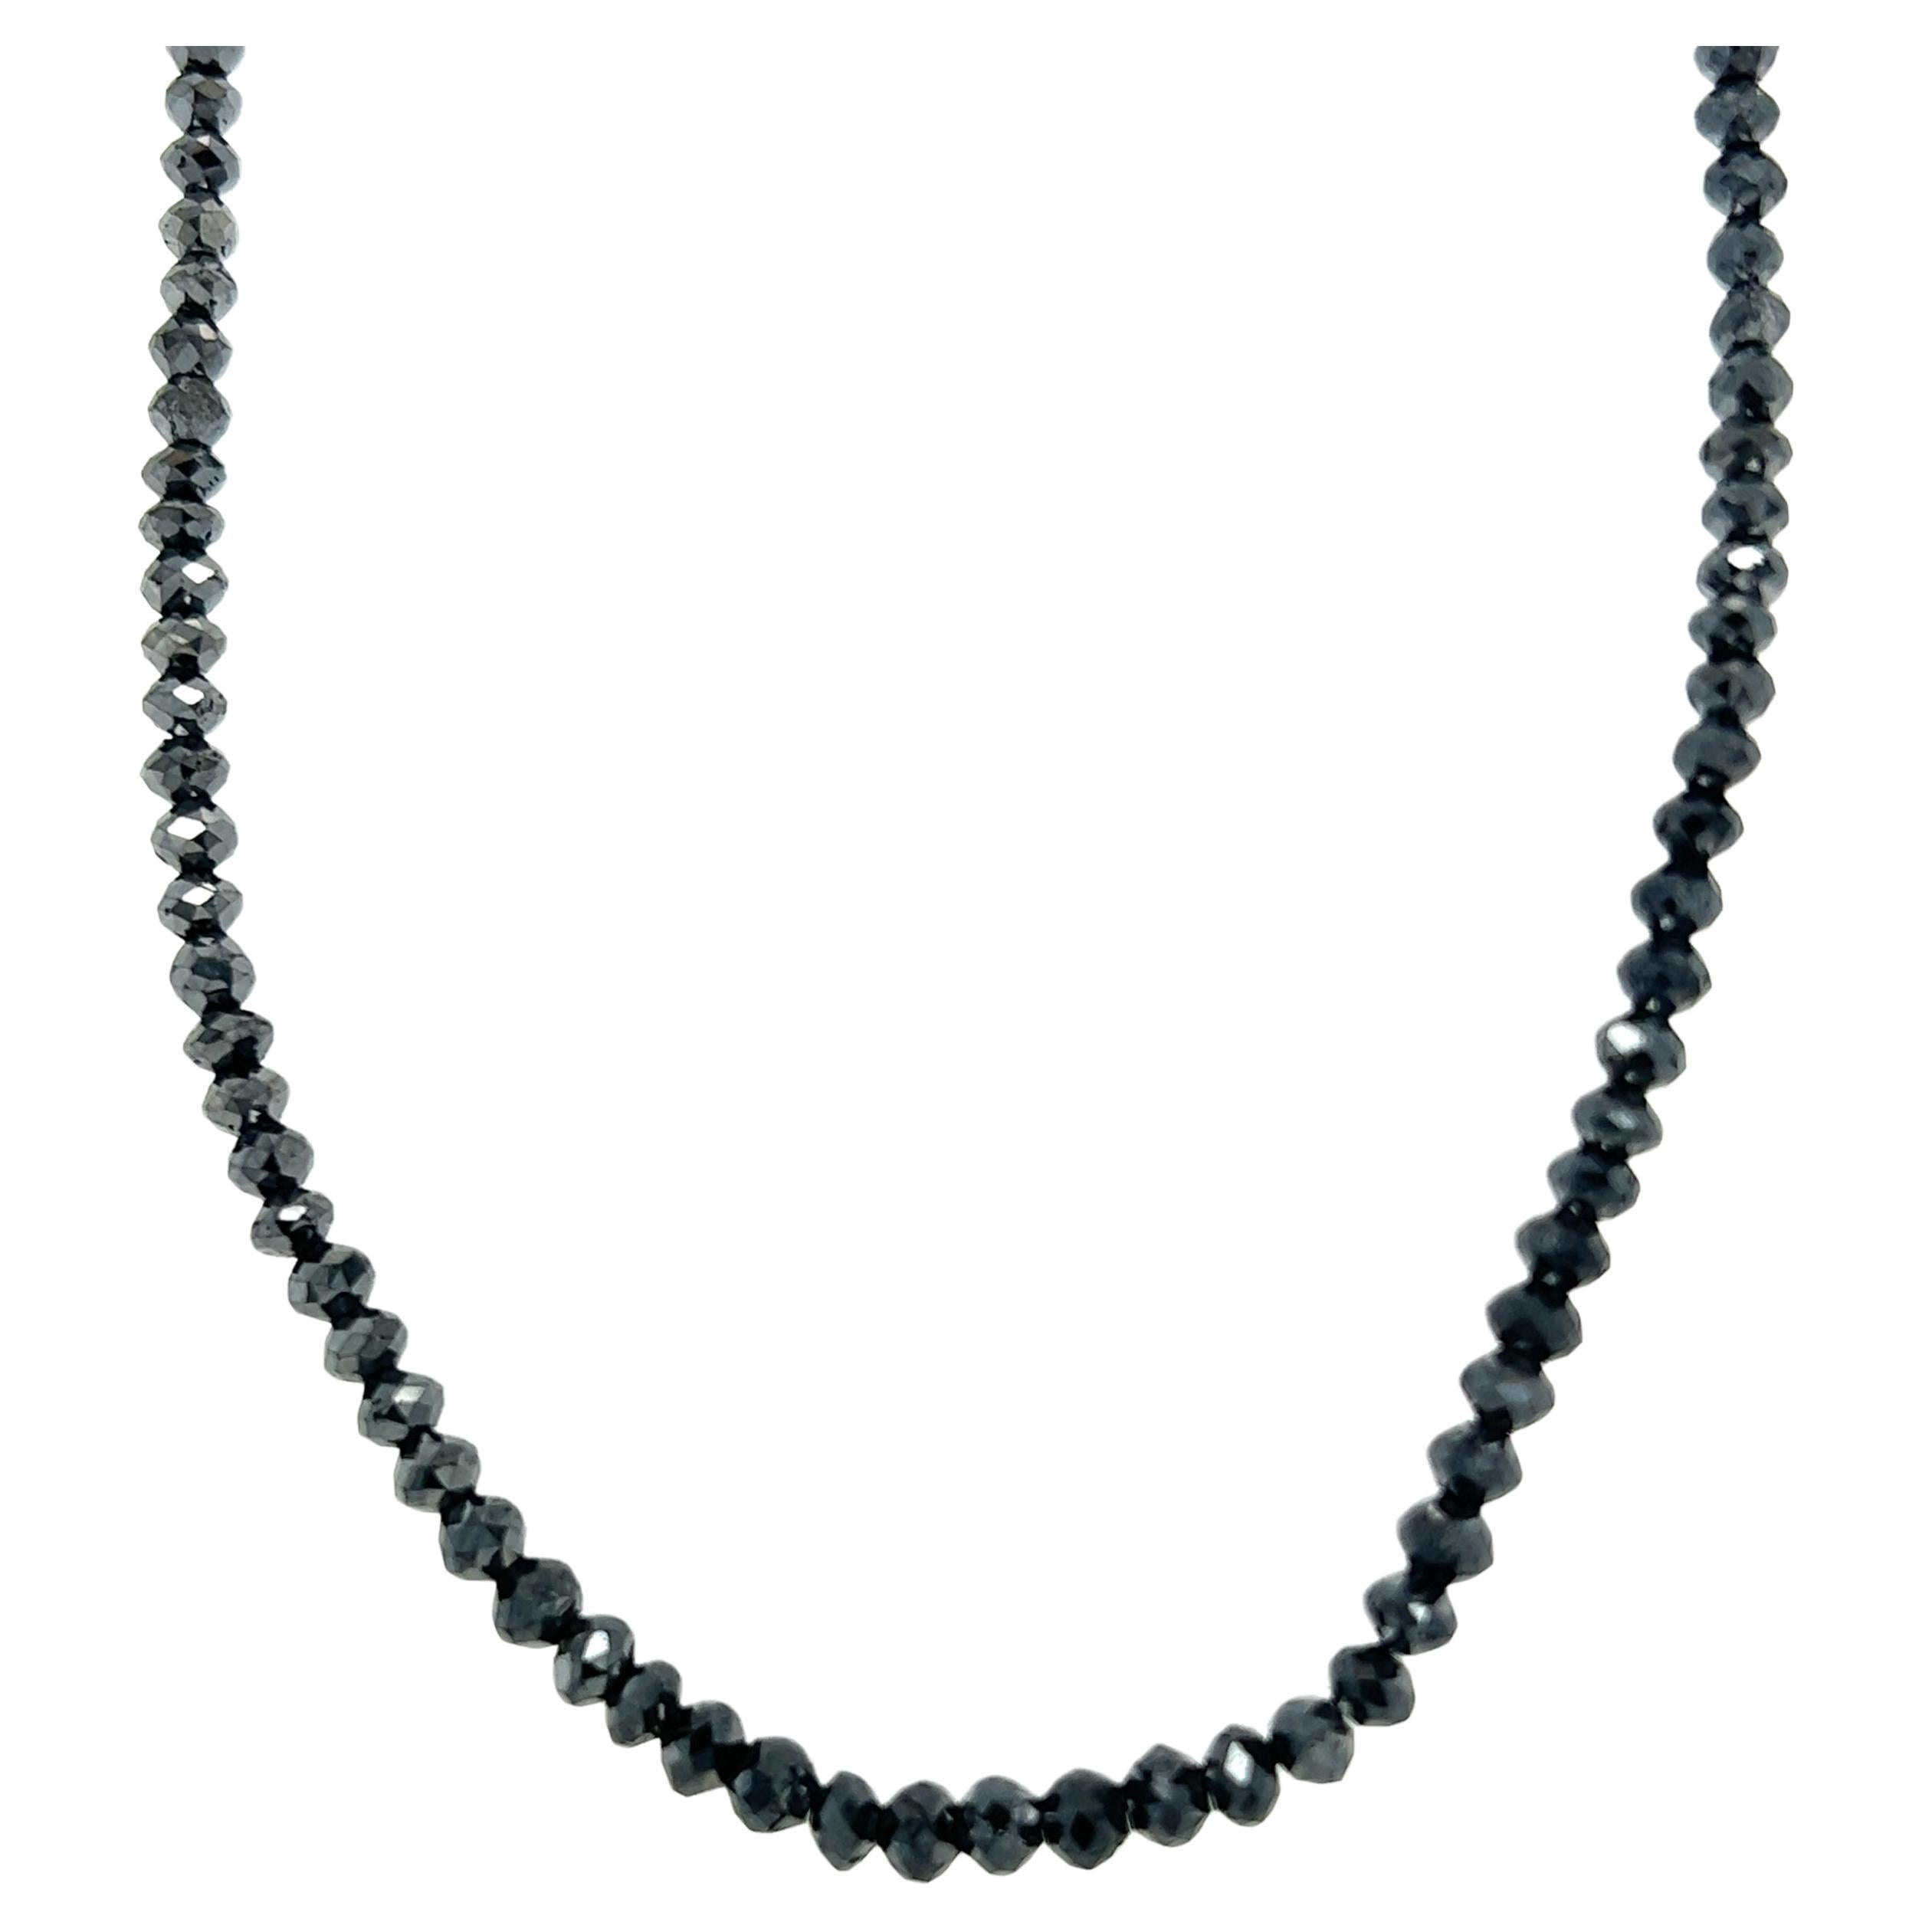 25.00 Carat Natural Black Diamond Briolette Cut Necklace 